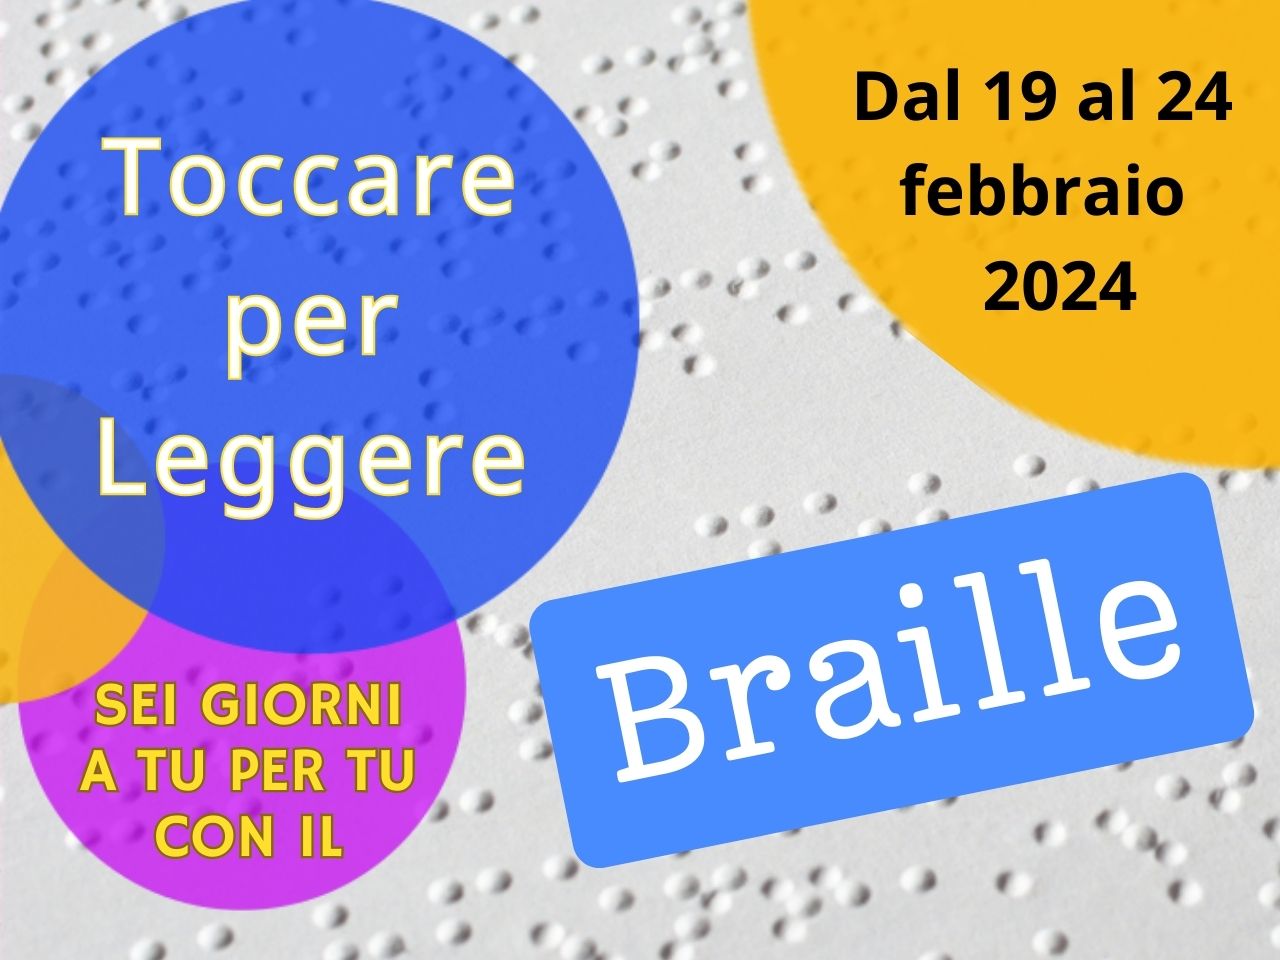 &quot;Toccare per Leggere&quot;. Sei giorni a tu per tu con il braille nelle Biblioteche civiche torinesi dal 19 al 24 febbraio 2024